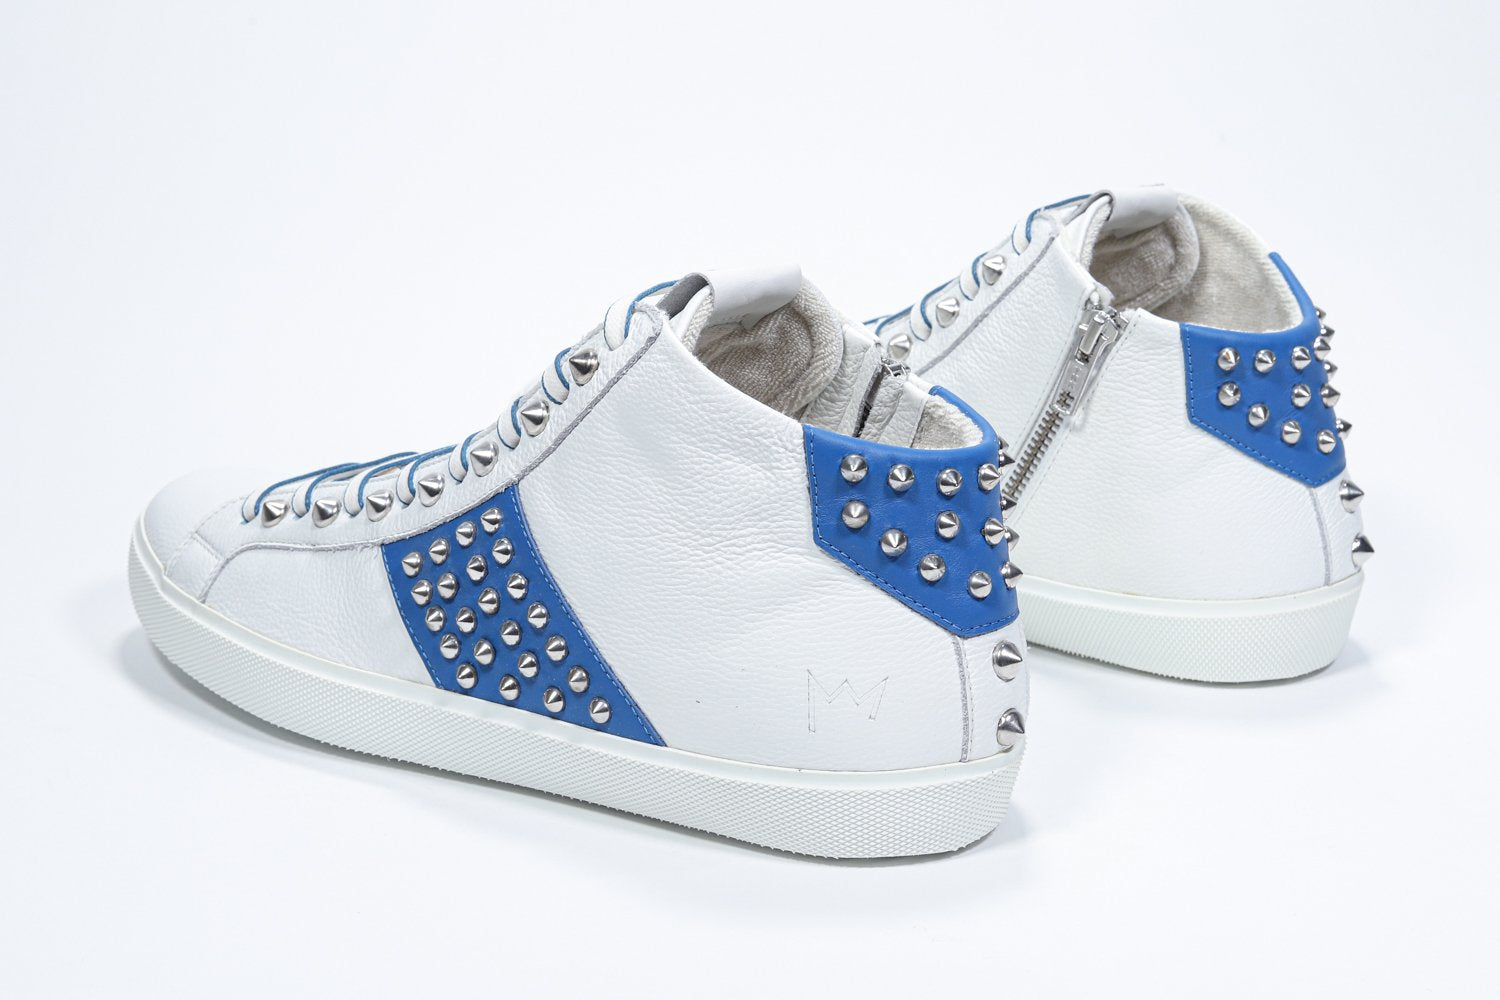 Vue de trois quarts arrière d'un modèle intermédiaire blanc et bleu royal sneaker. Tige en cuir avec clous, fermeture à glissière interne et semelle en caoutchouc blanc.